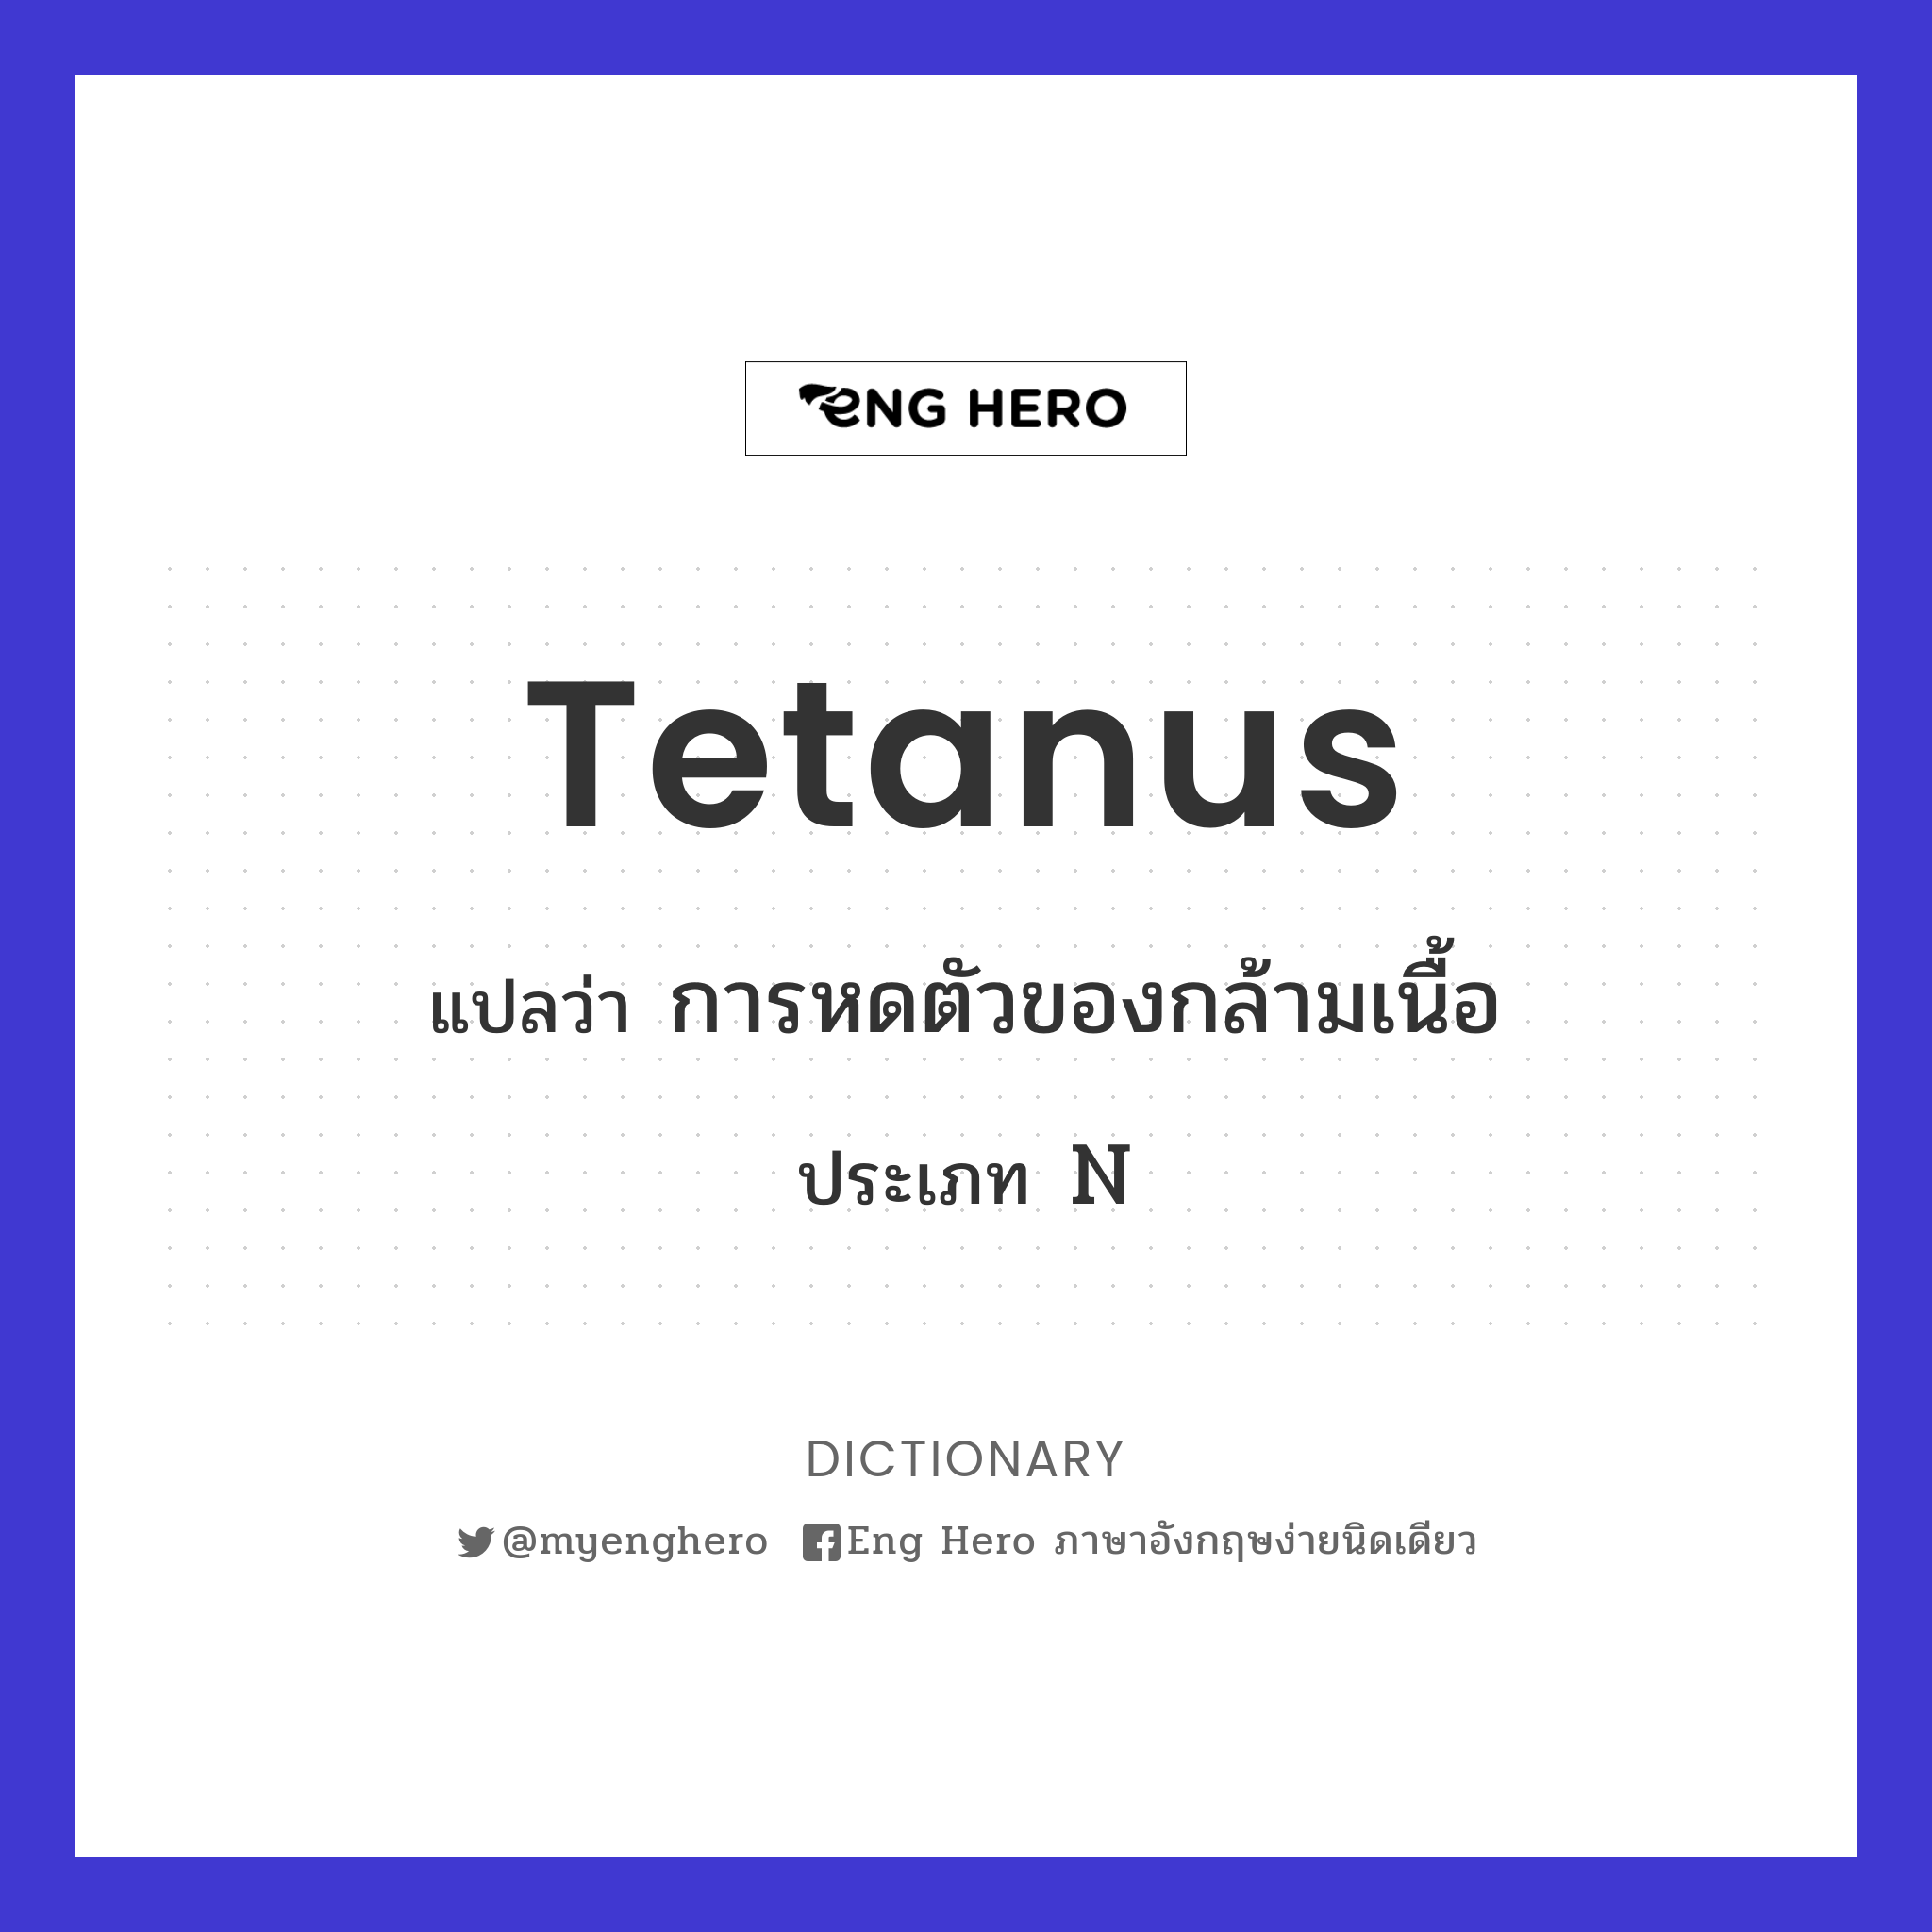 tetanus